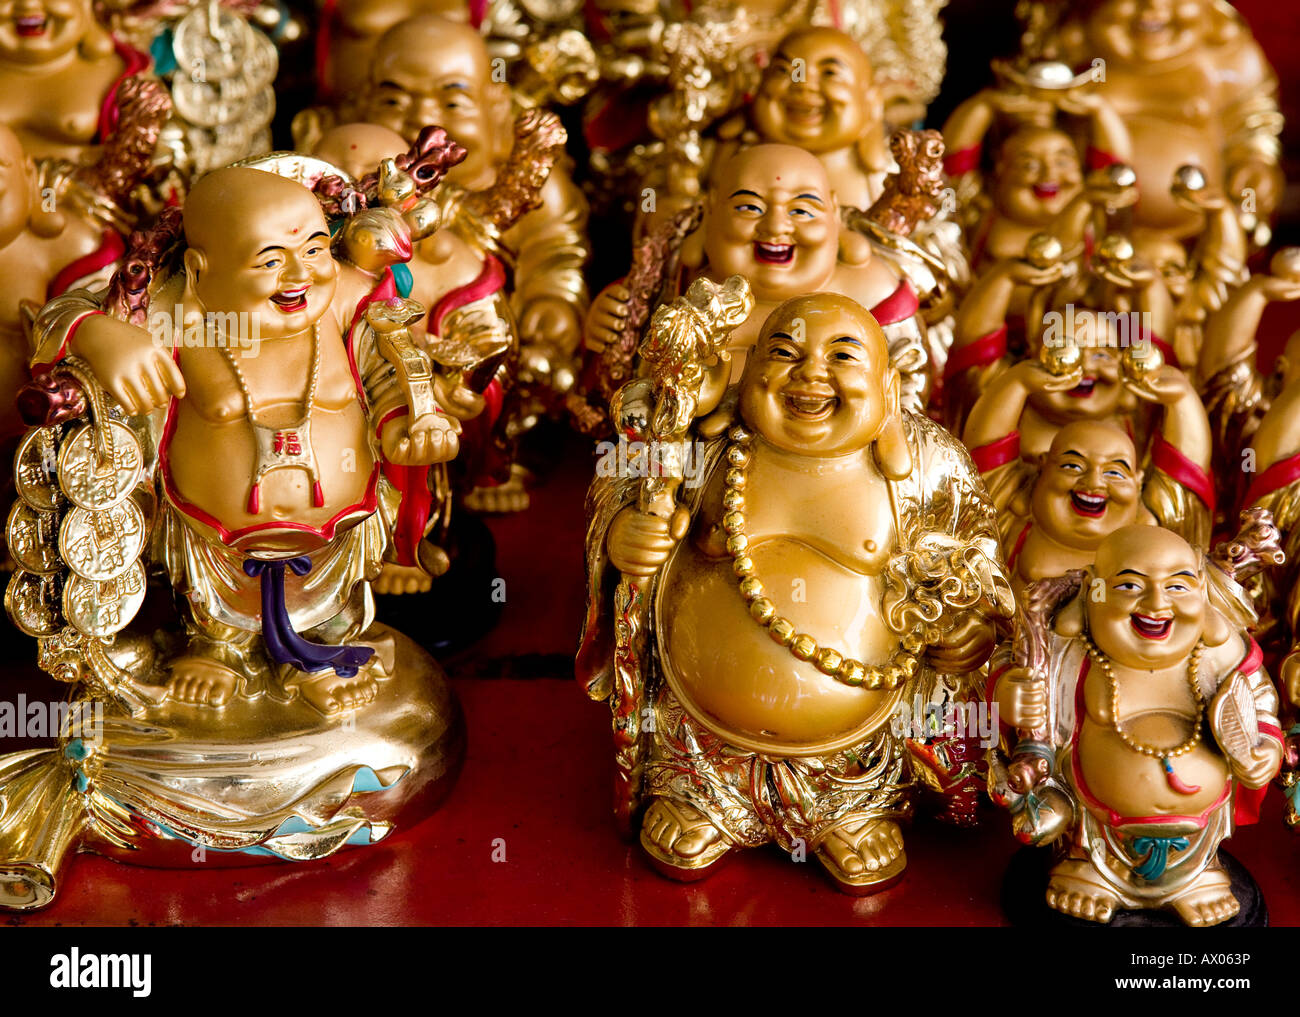 Rire miniature bouddhas d'or Bangkok Thailande Asie du sud-est Banque D'Images